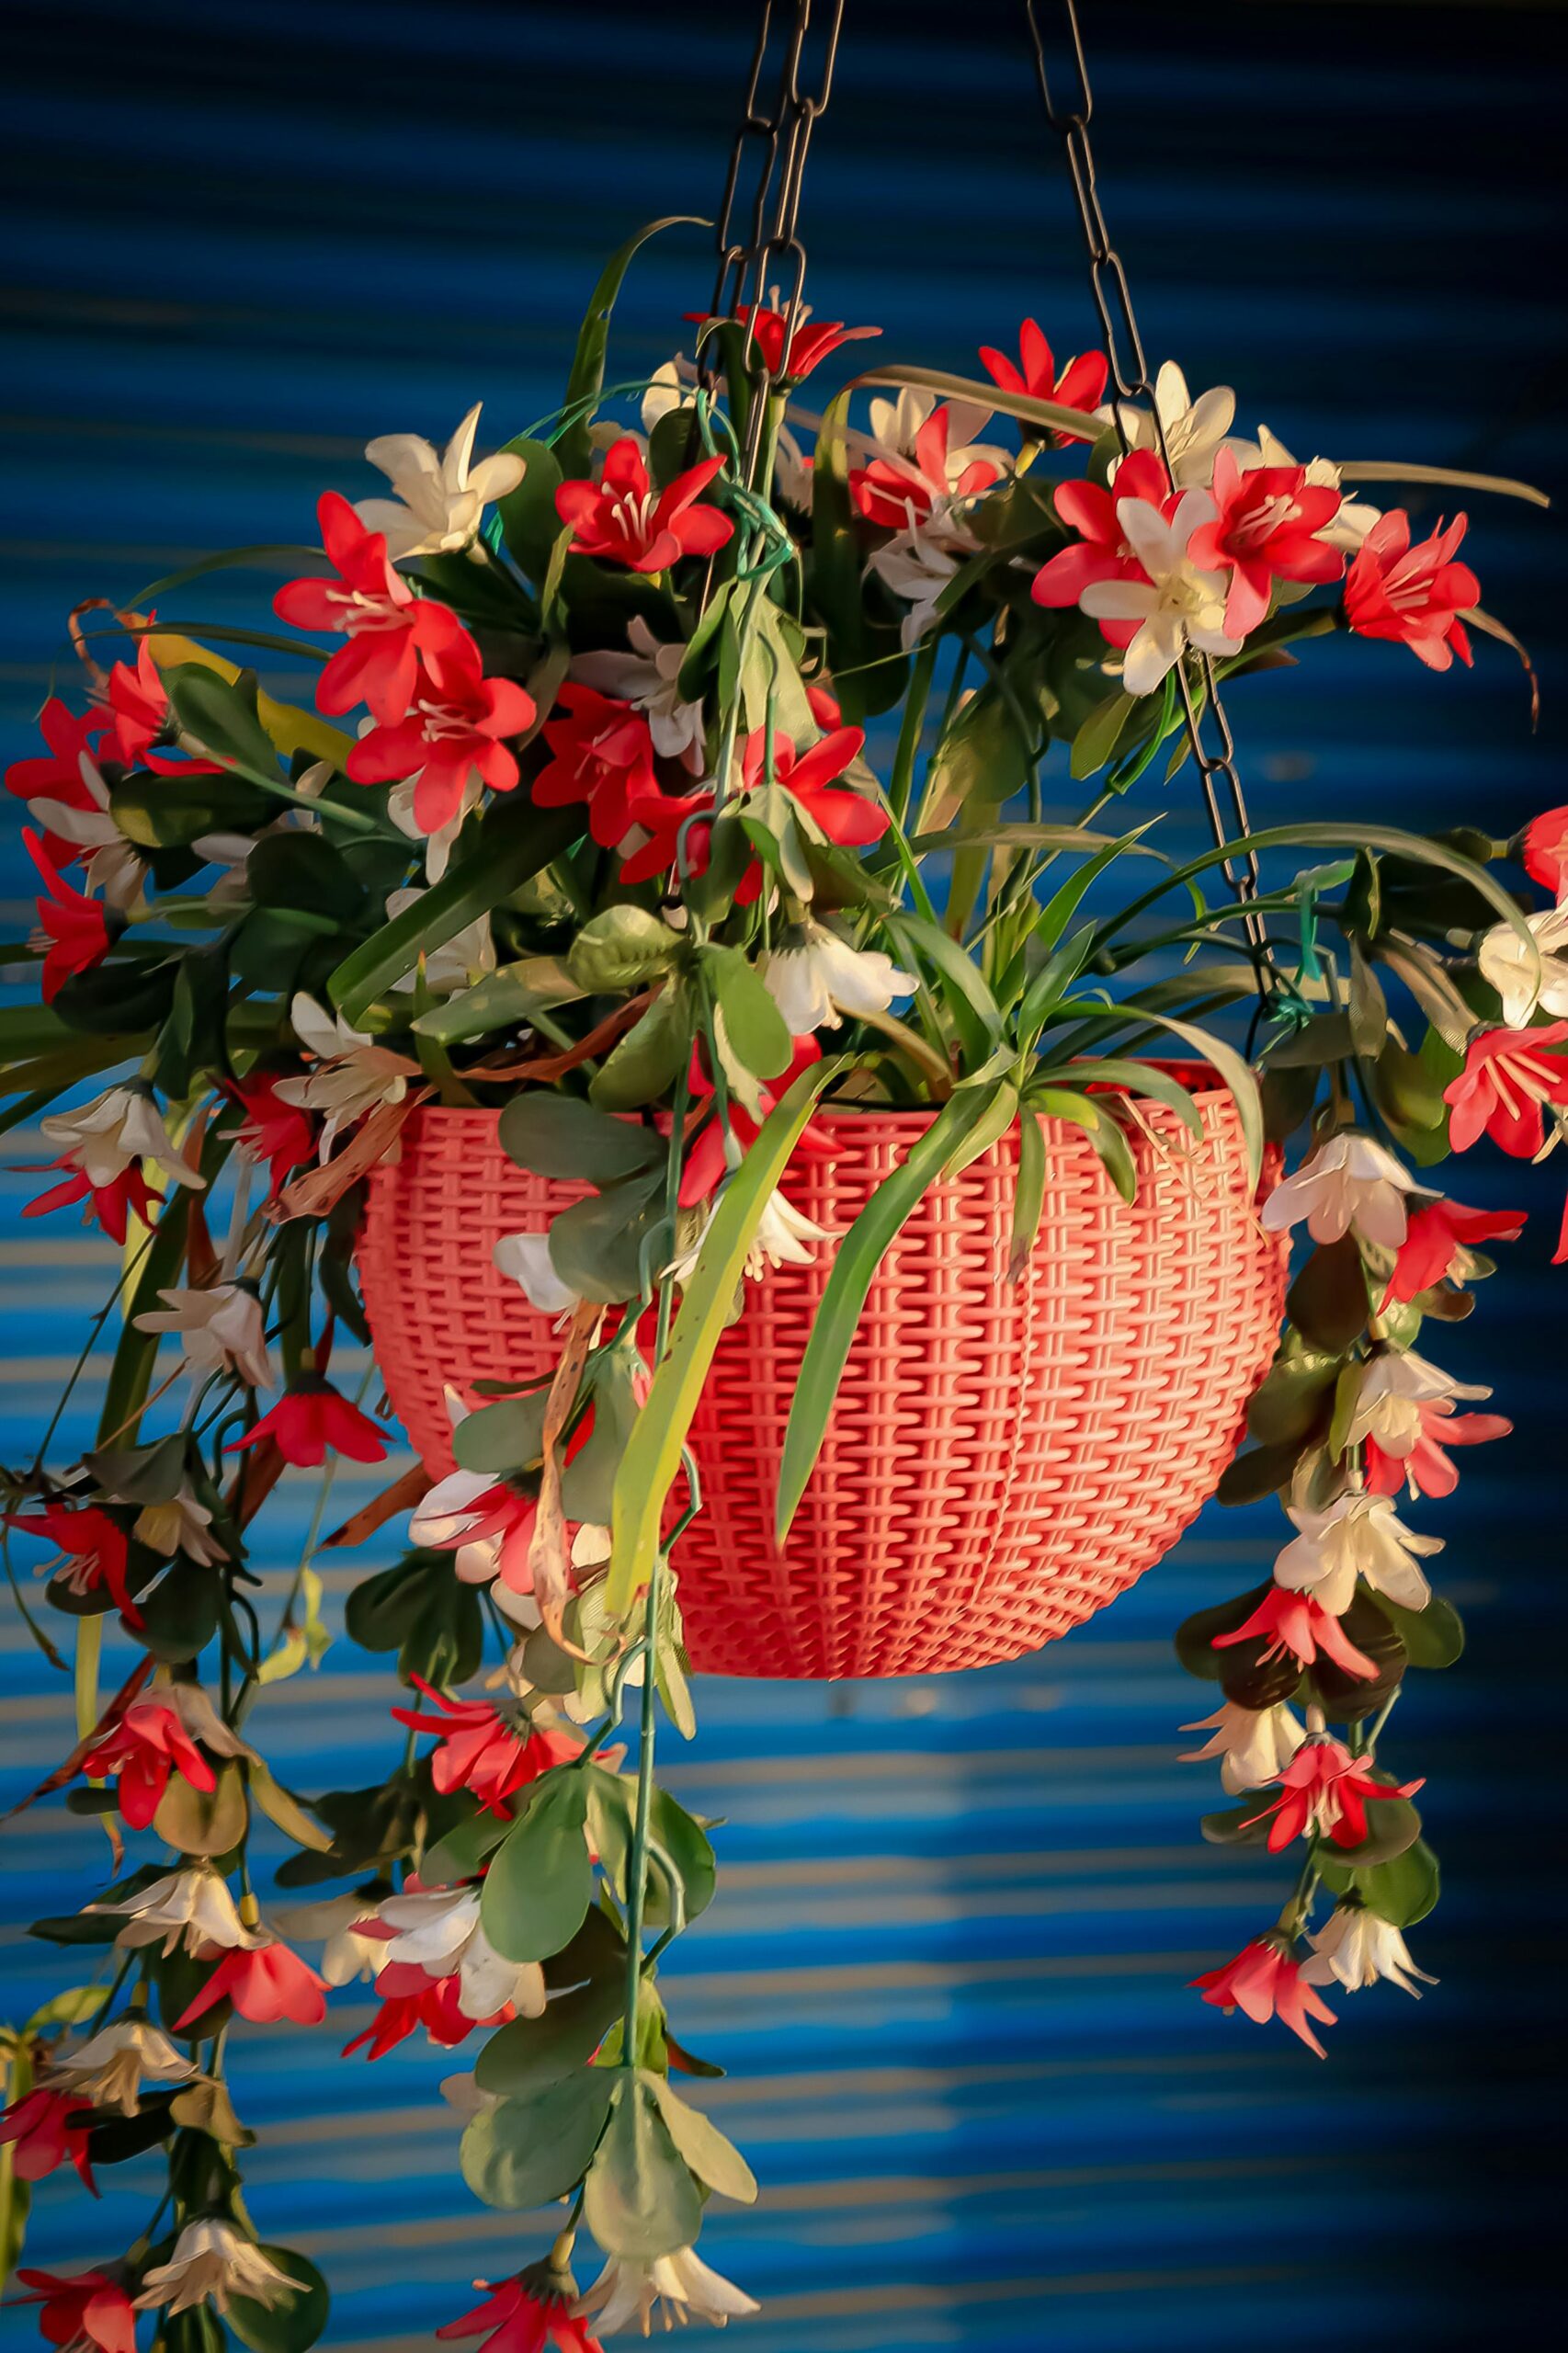 floral hanging baskets